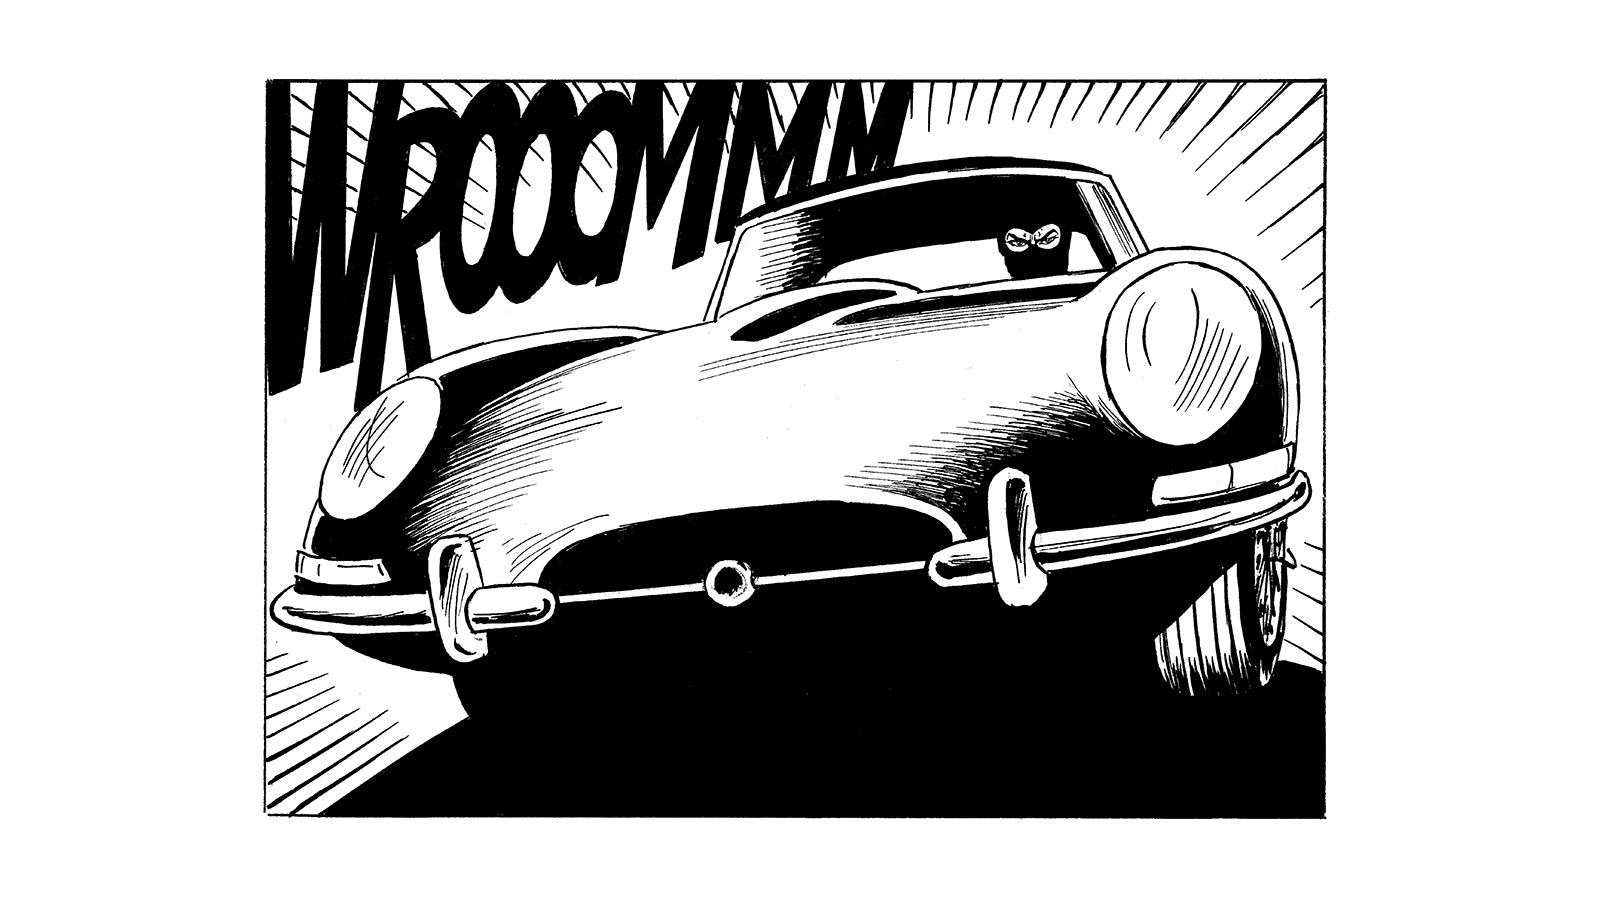 Diabolik, il criminale più affascinante di sempre, torna sul grande schermo in un film dei Manetti Bros. Con lui non poteva mancare quella che ormai è diventata a tutti gli effetti un'altra leggenda, la Jaguar E-Type.